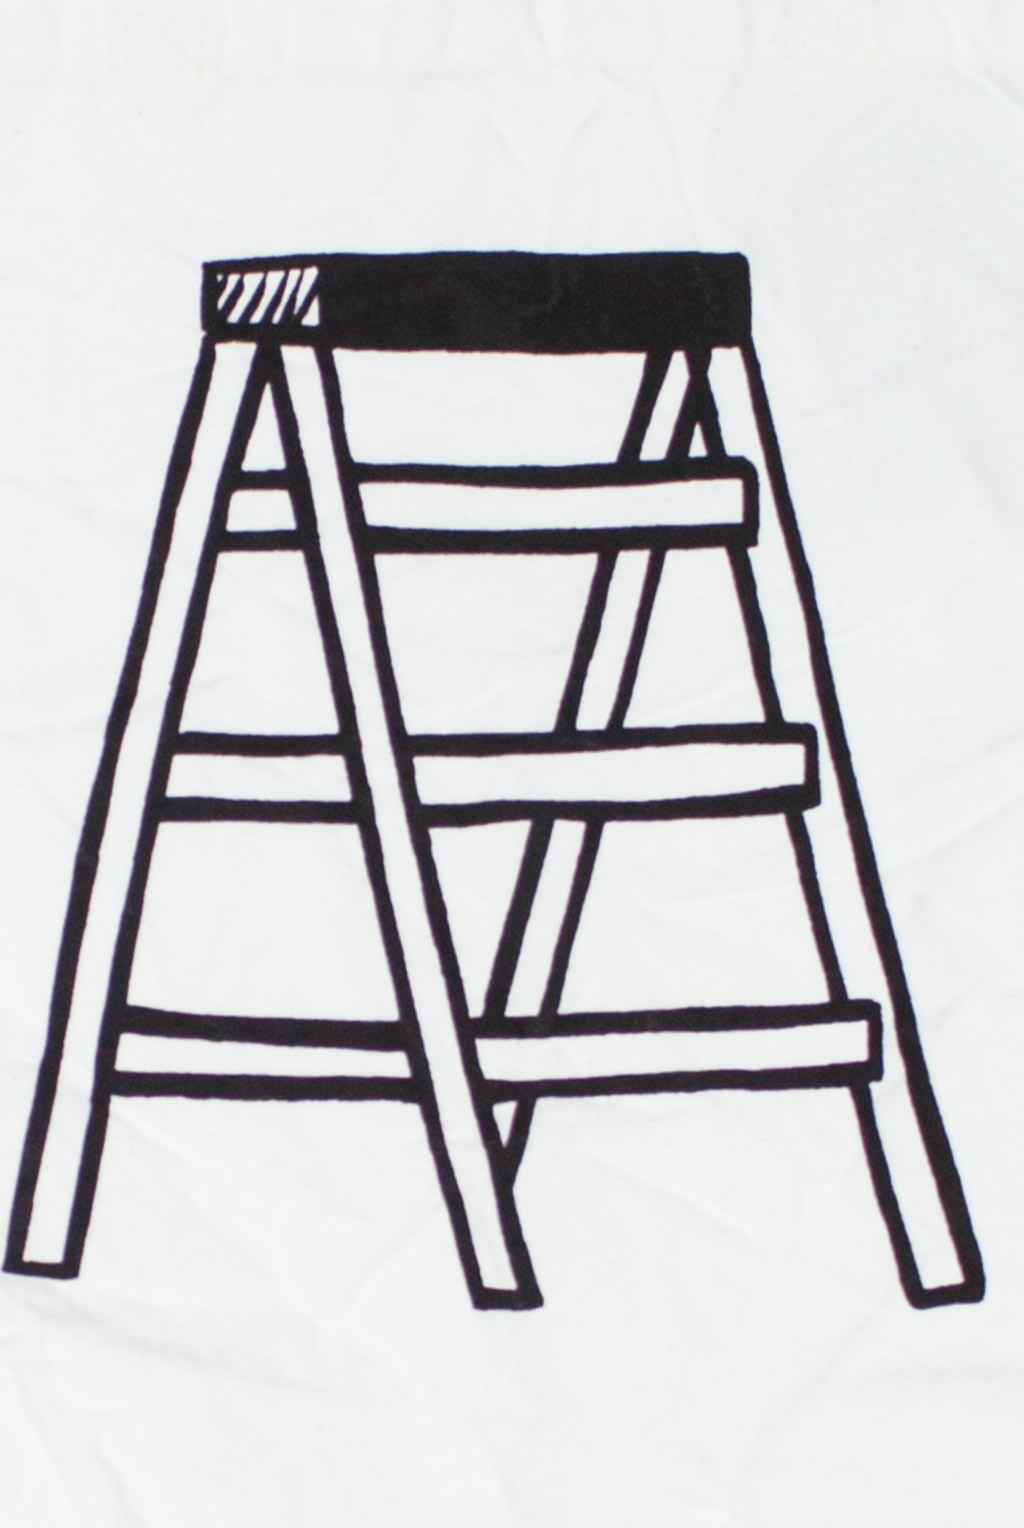 Noritake Tote - Ladder